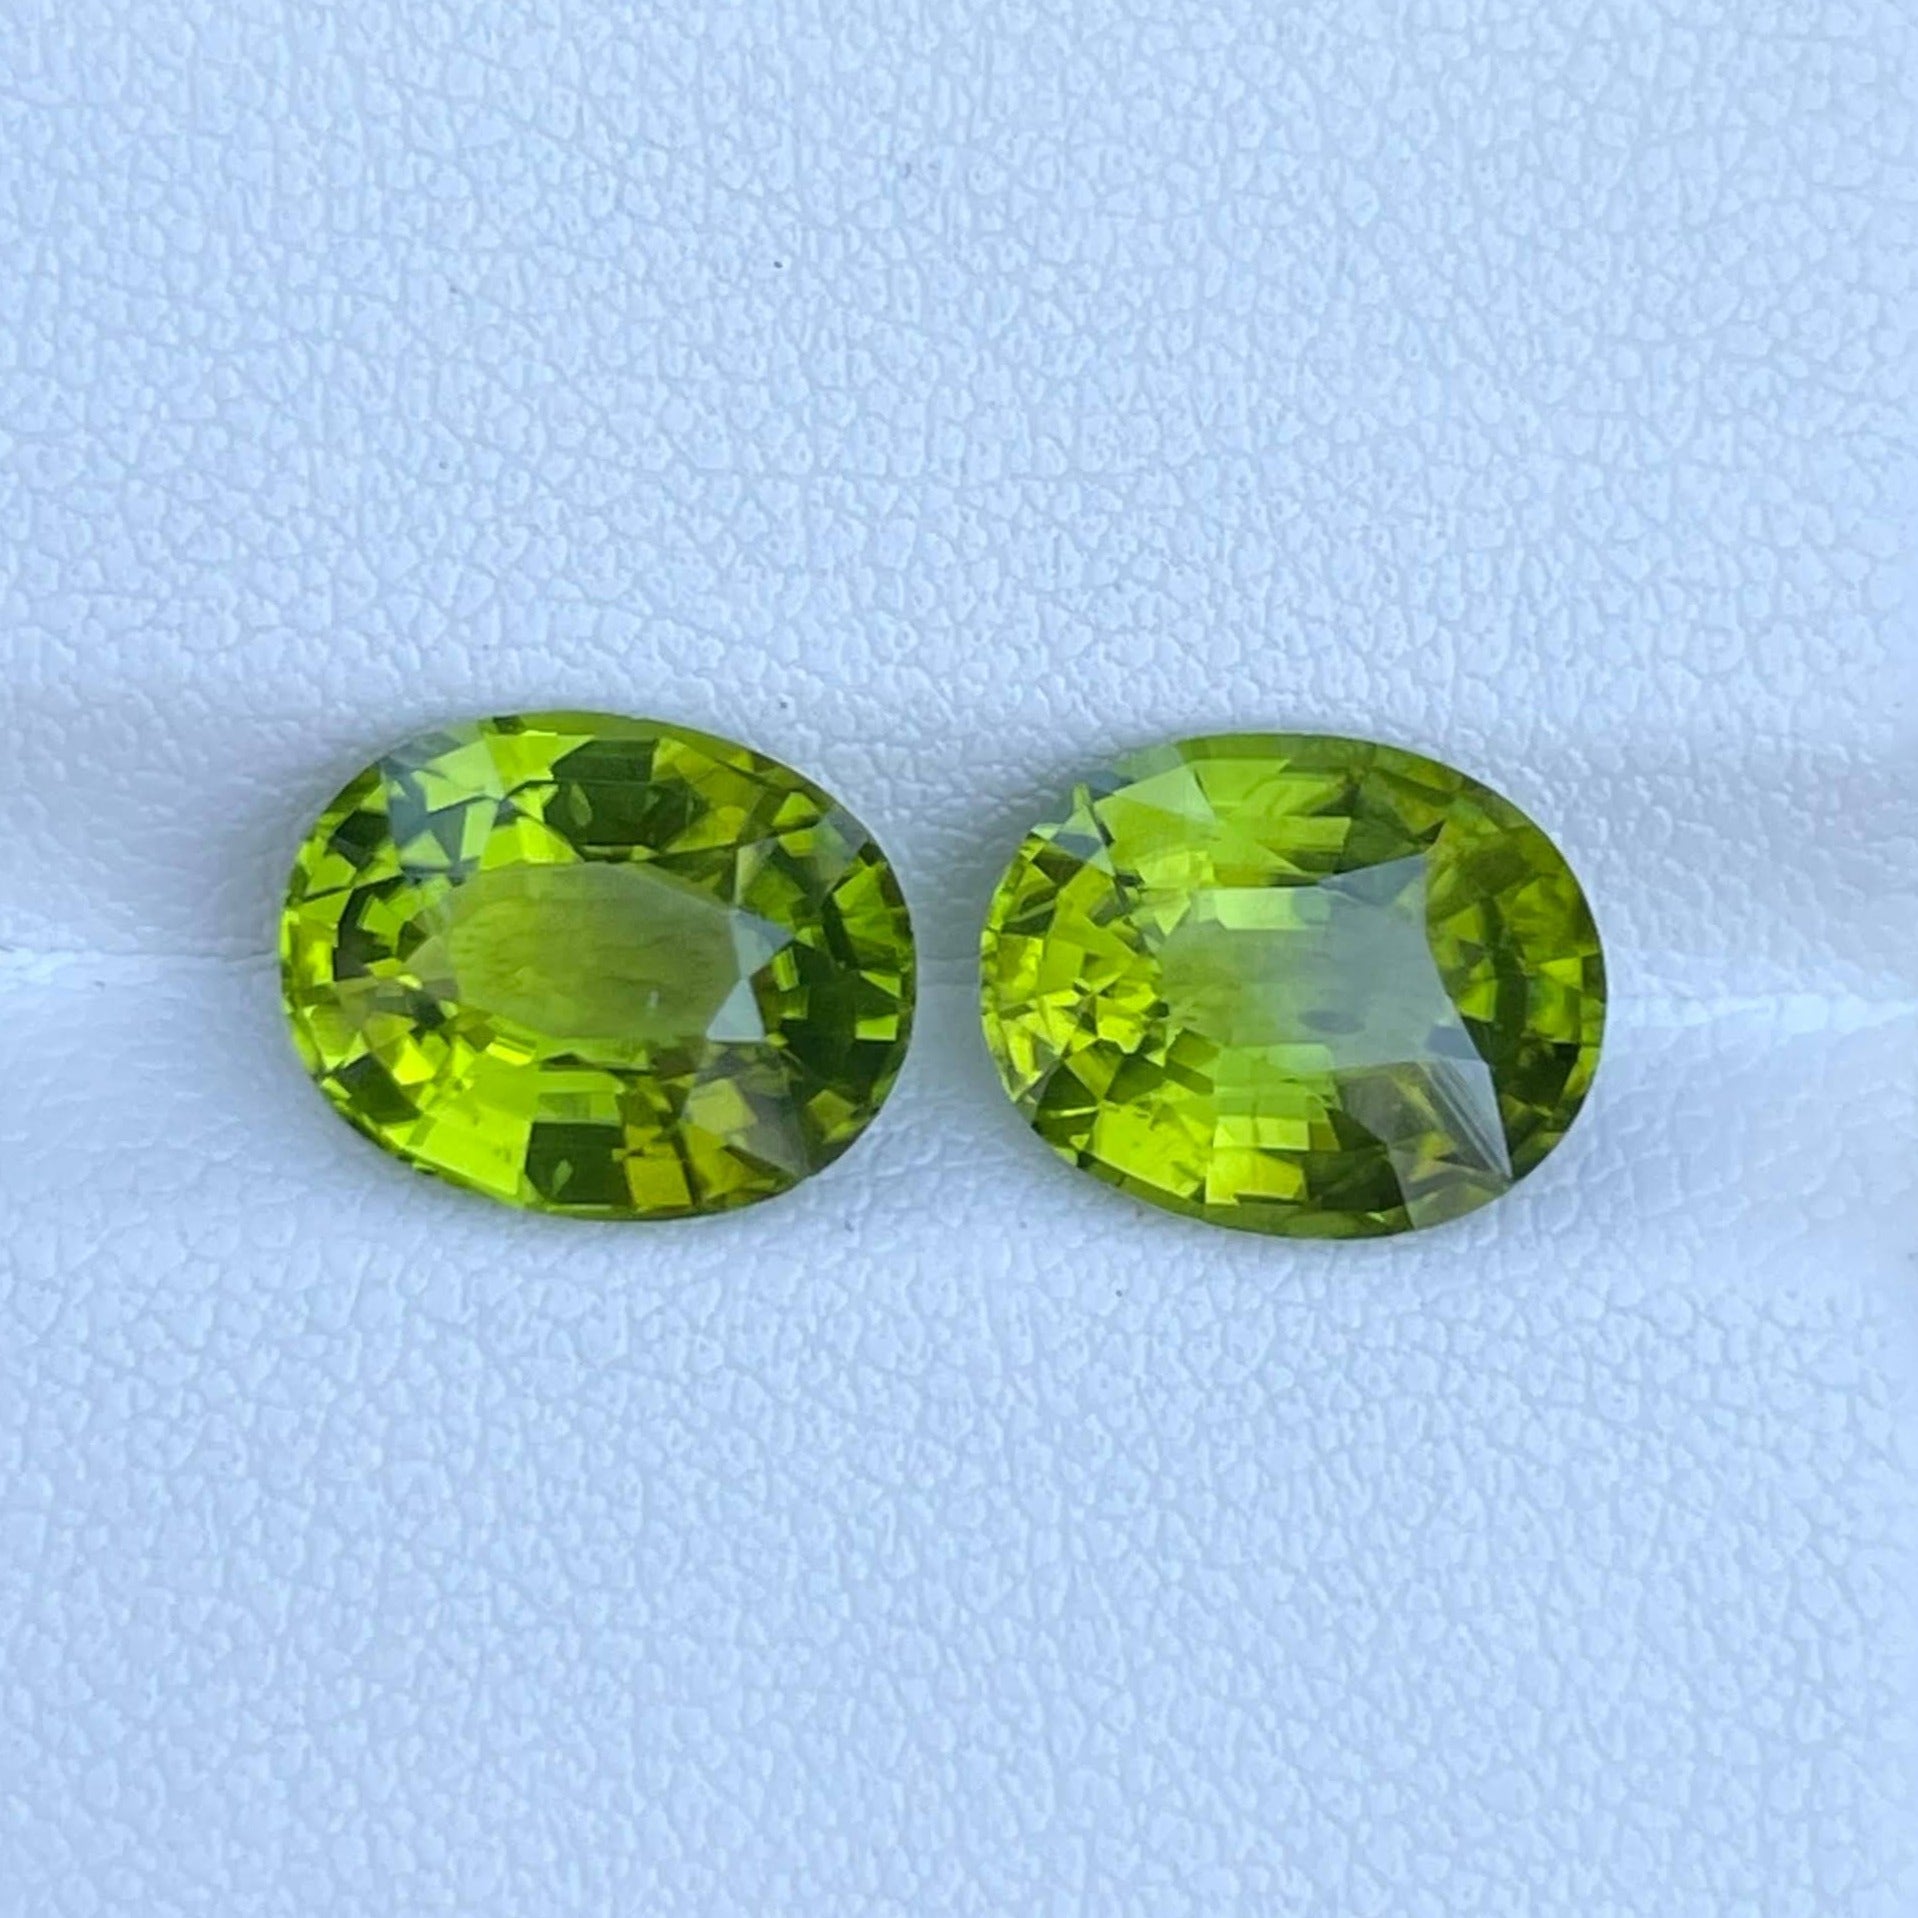 7.10 carats Green Peridot Pair Oval Cut